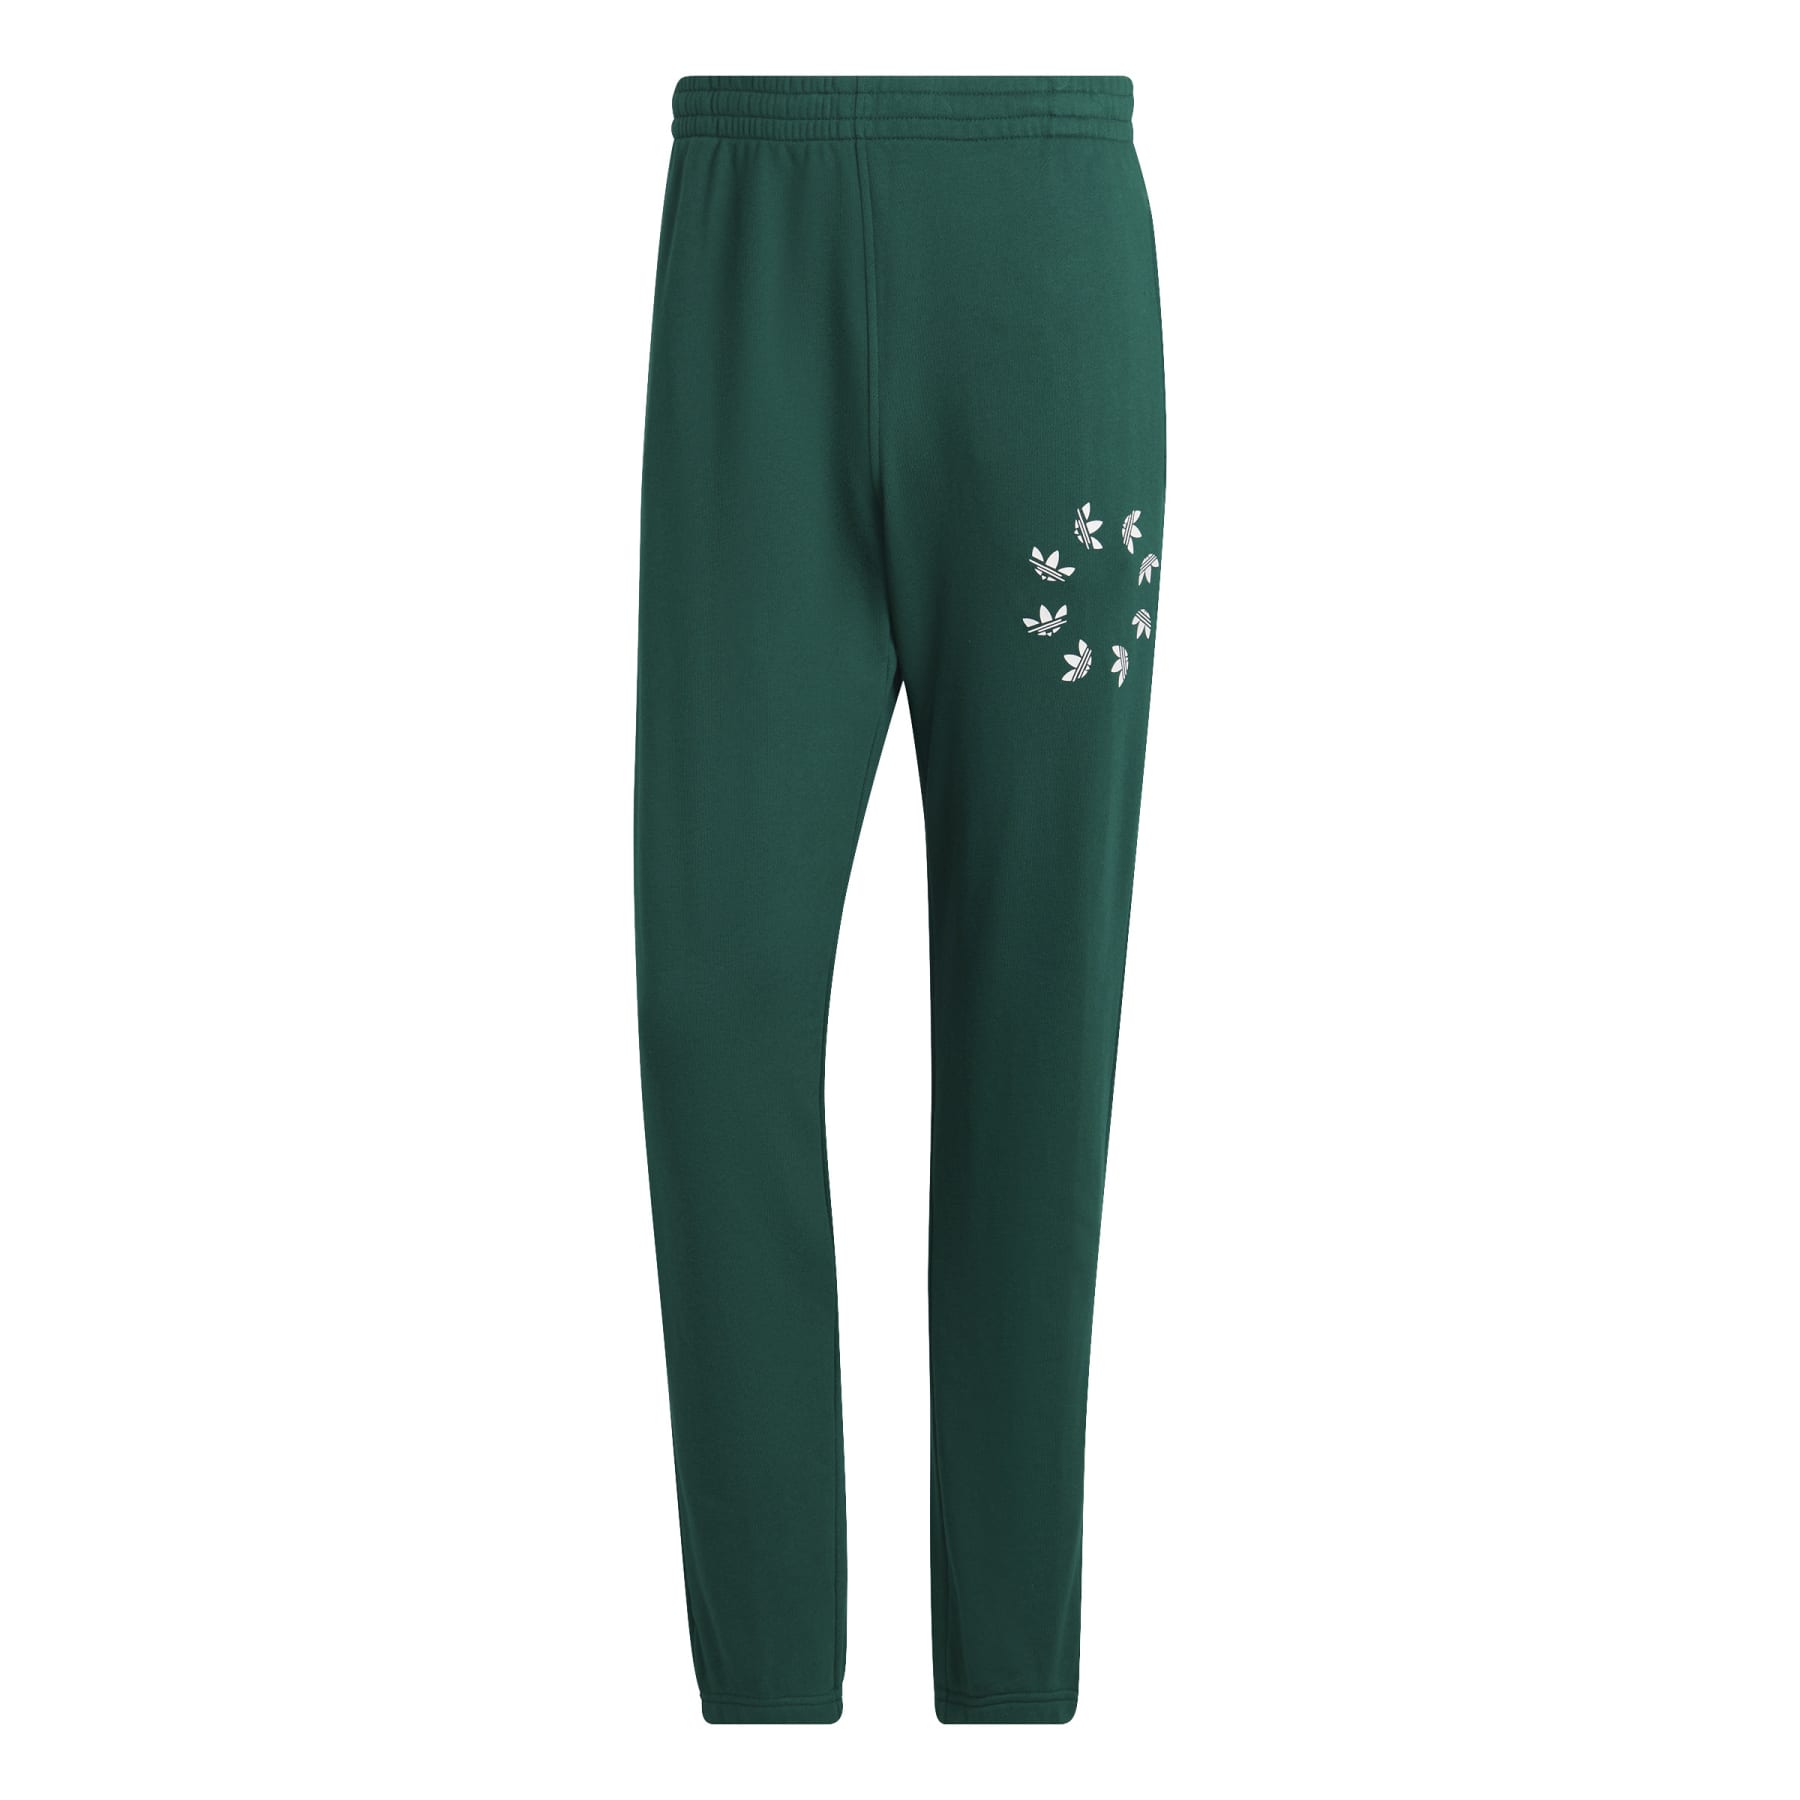 Adicolor Spinner Sweatpant - Collegiate Green